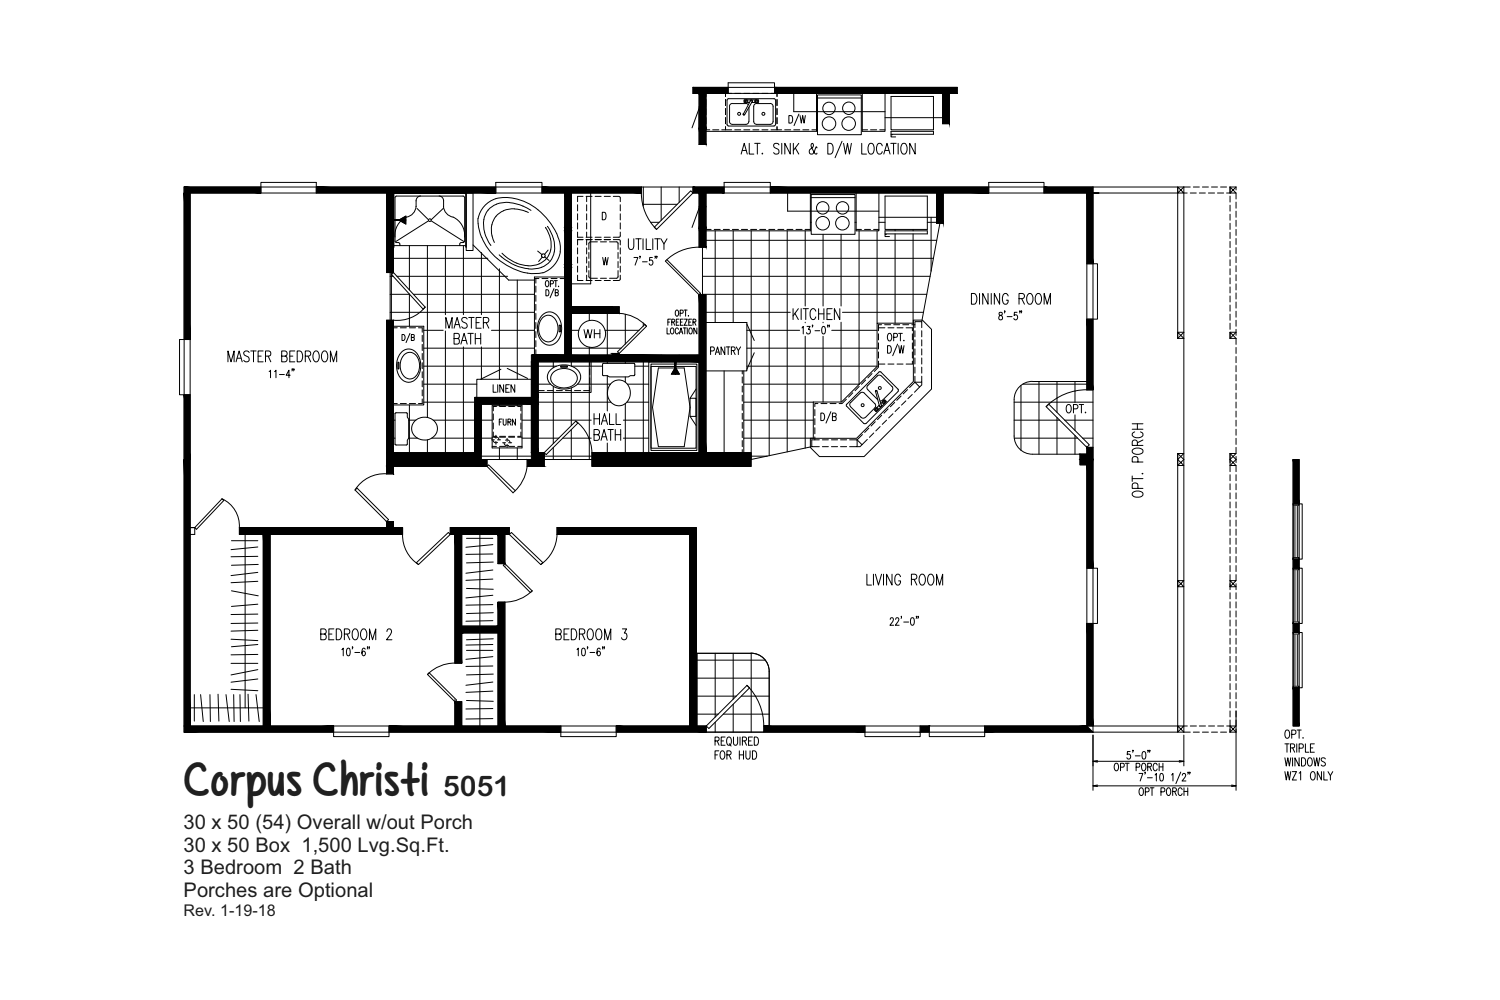 Corpus Christi 5051 Floorplan